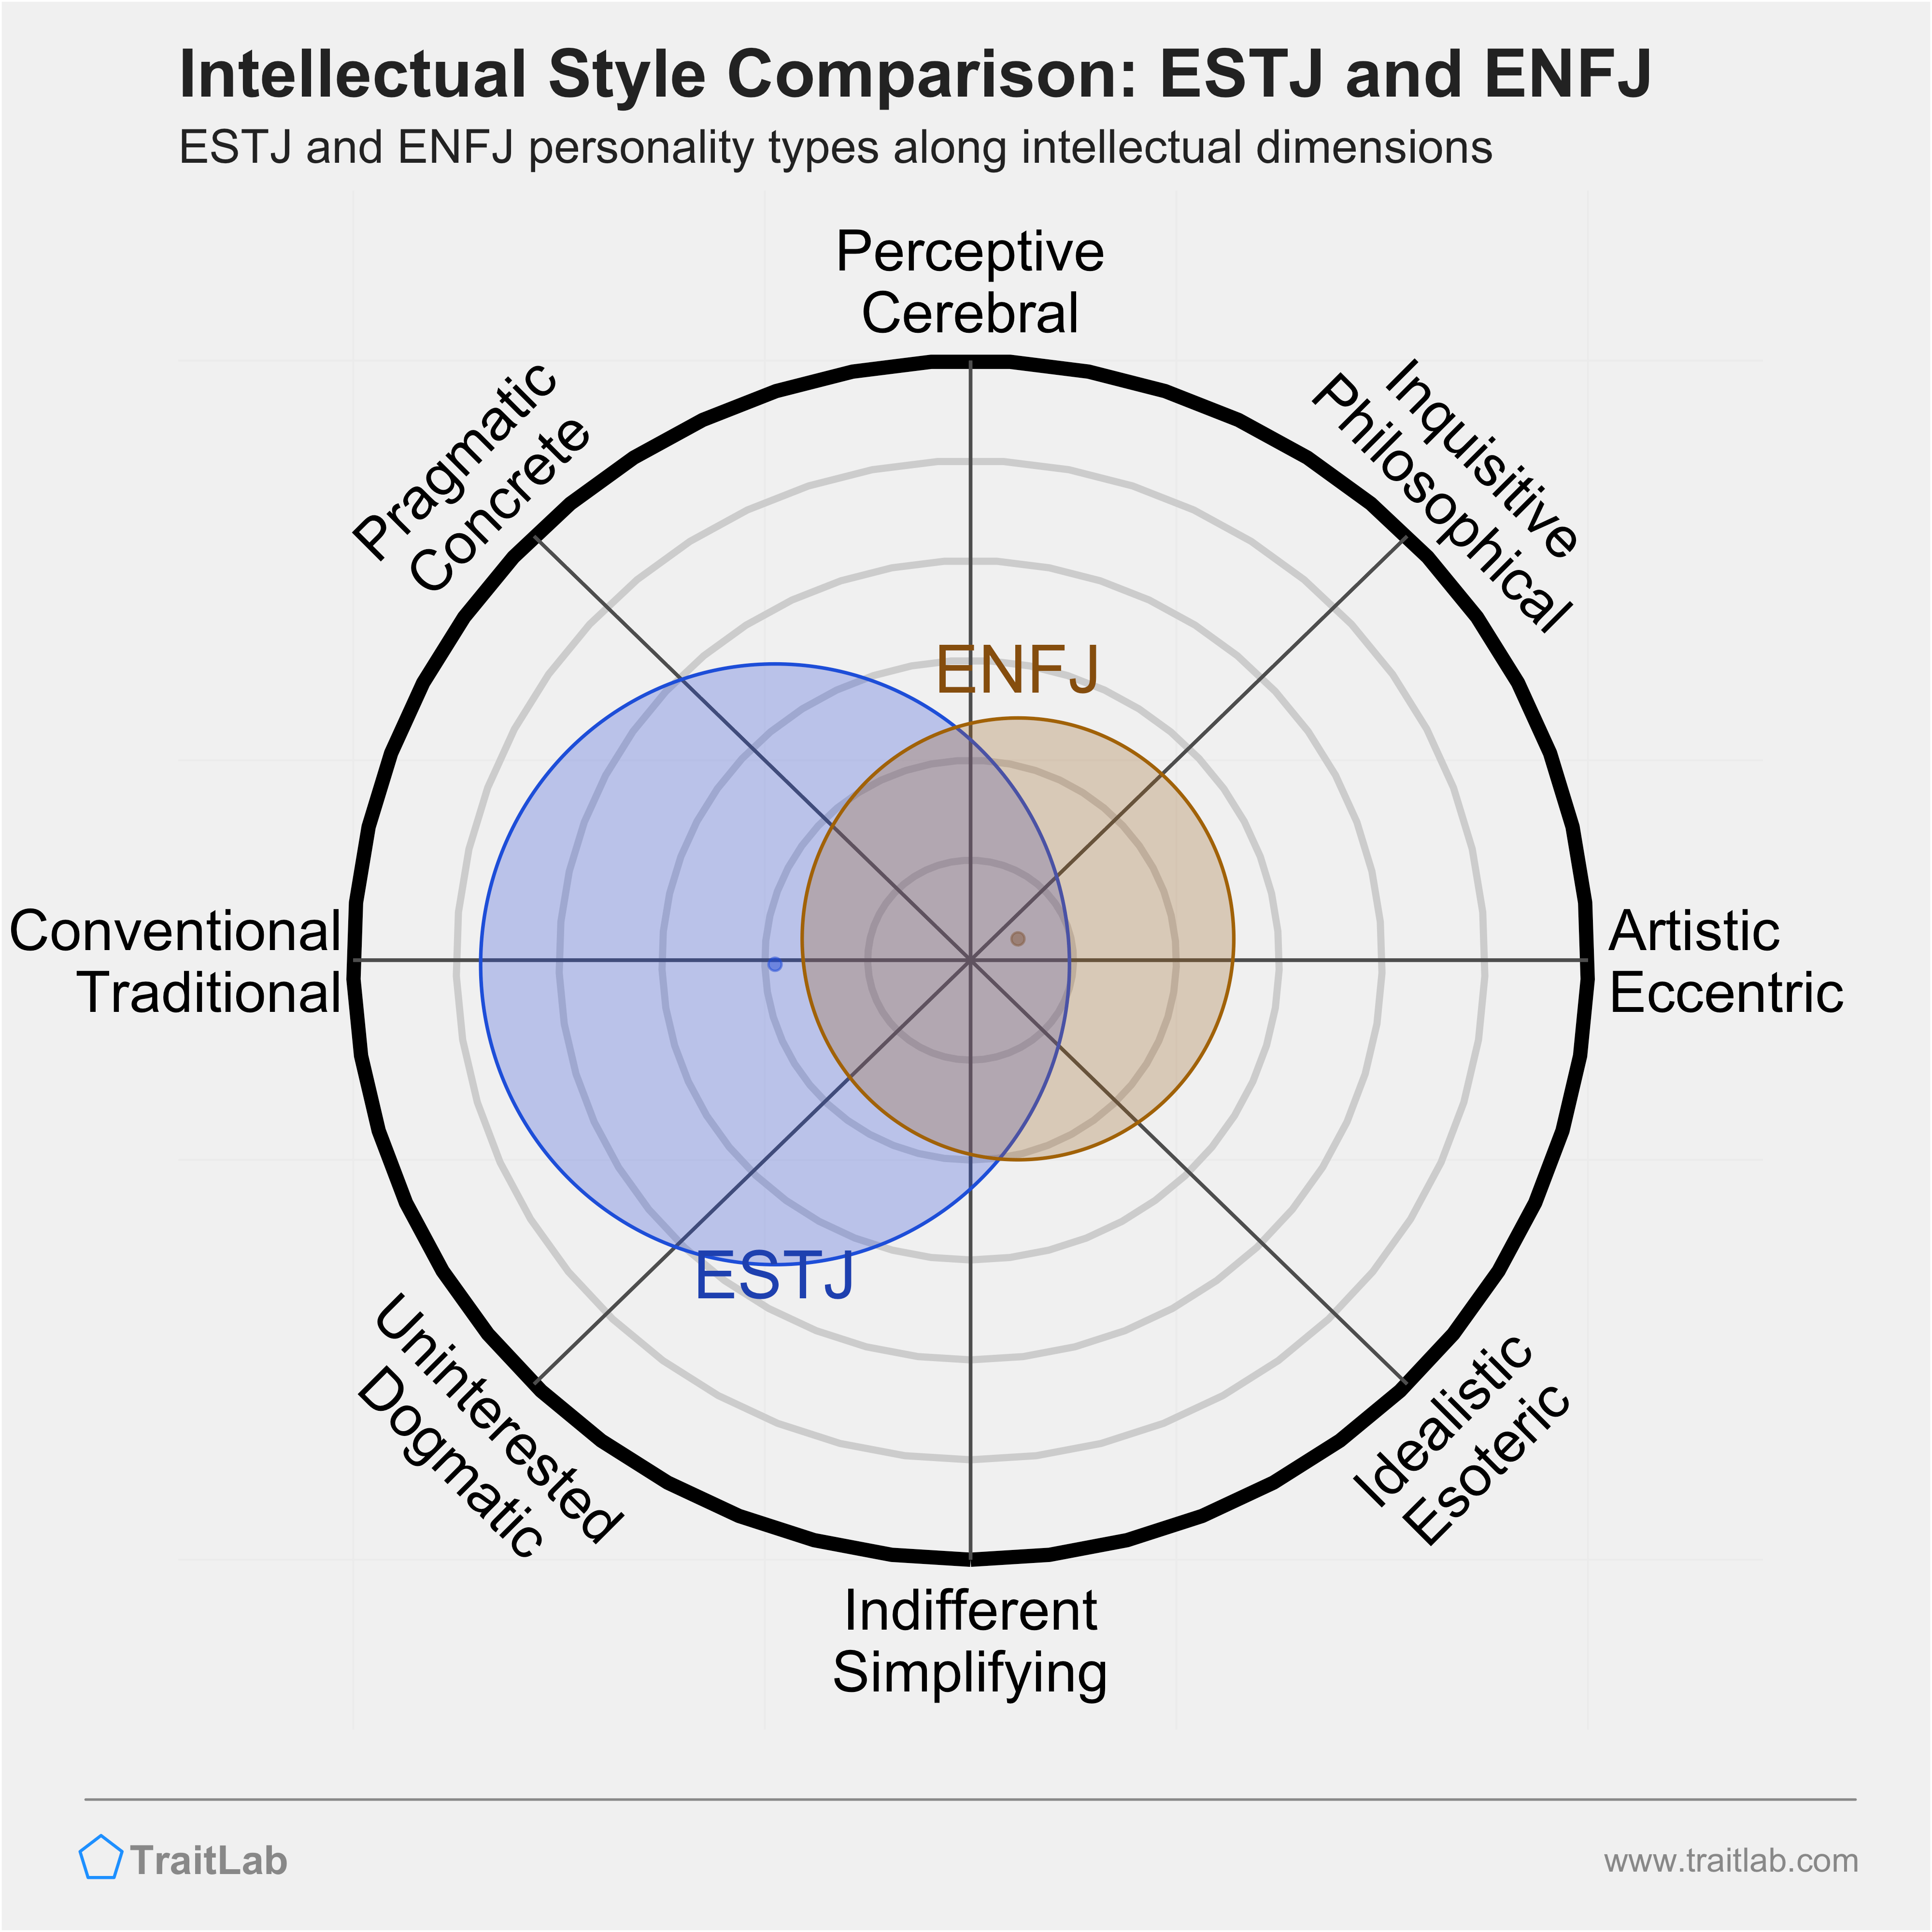 ESTJ and ENFJ comparison across intellectual dimensions